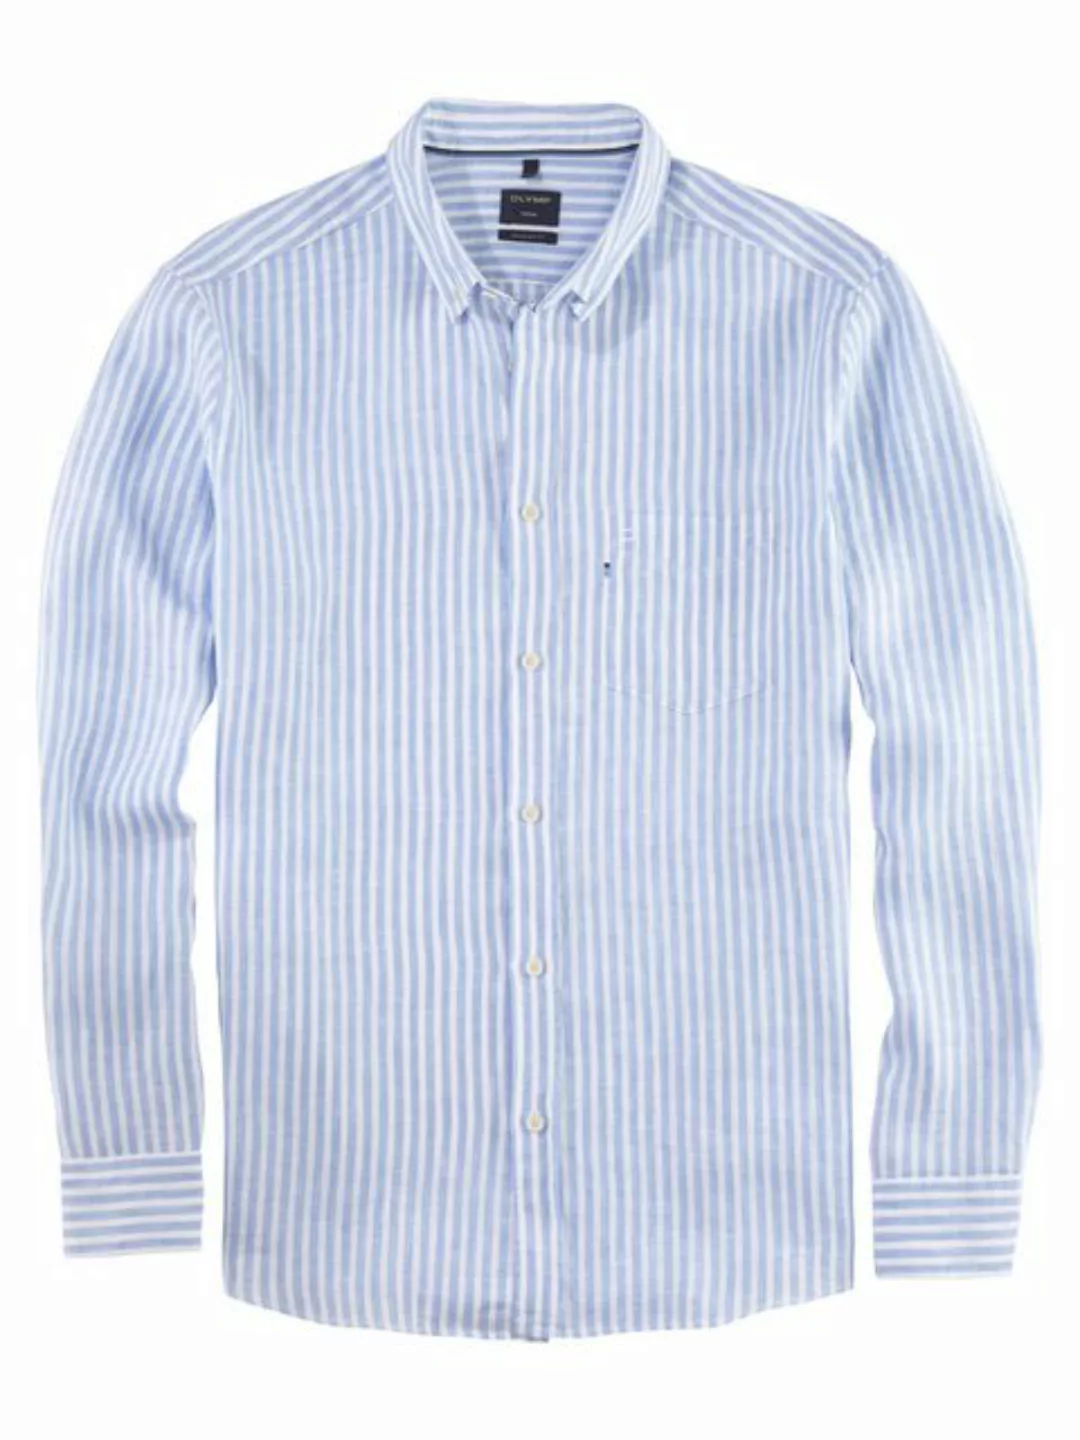 OLYMP Leinenhemd 4108/54 Hemden günstig online kaufen